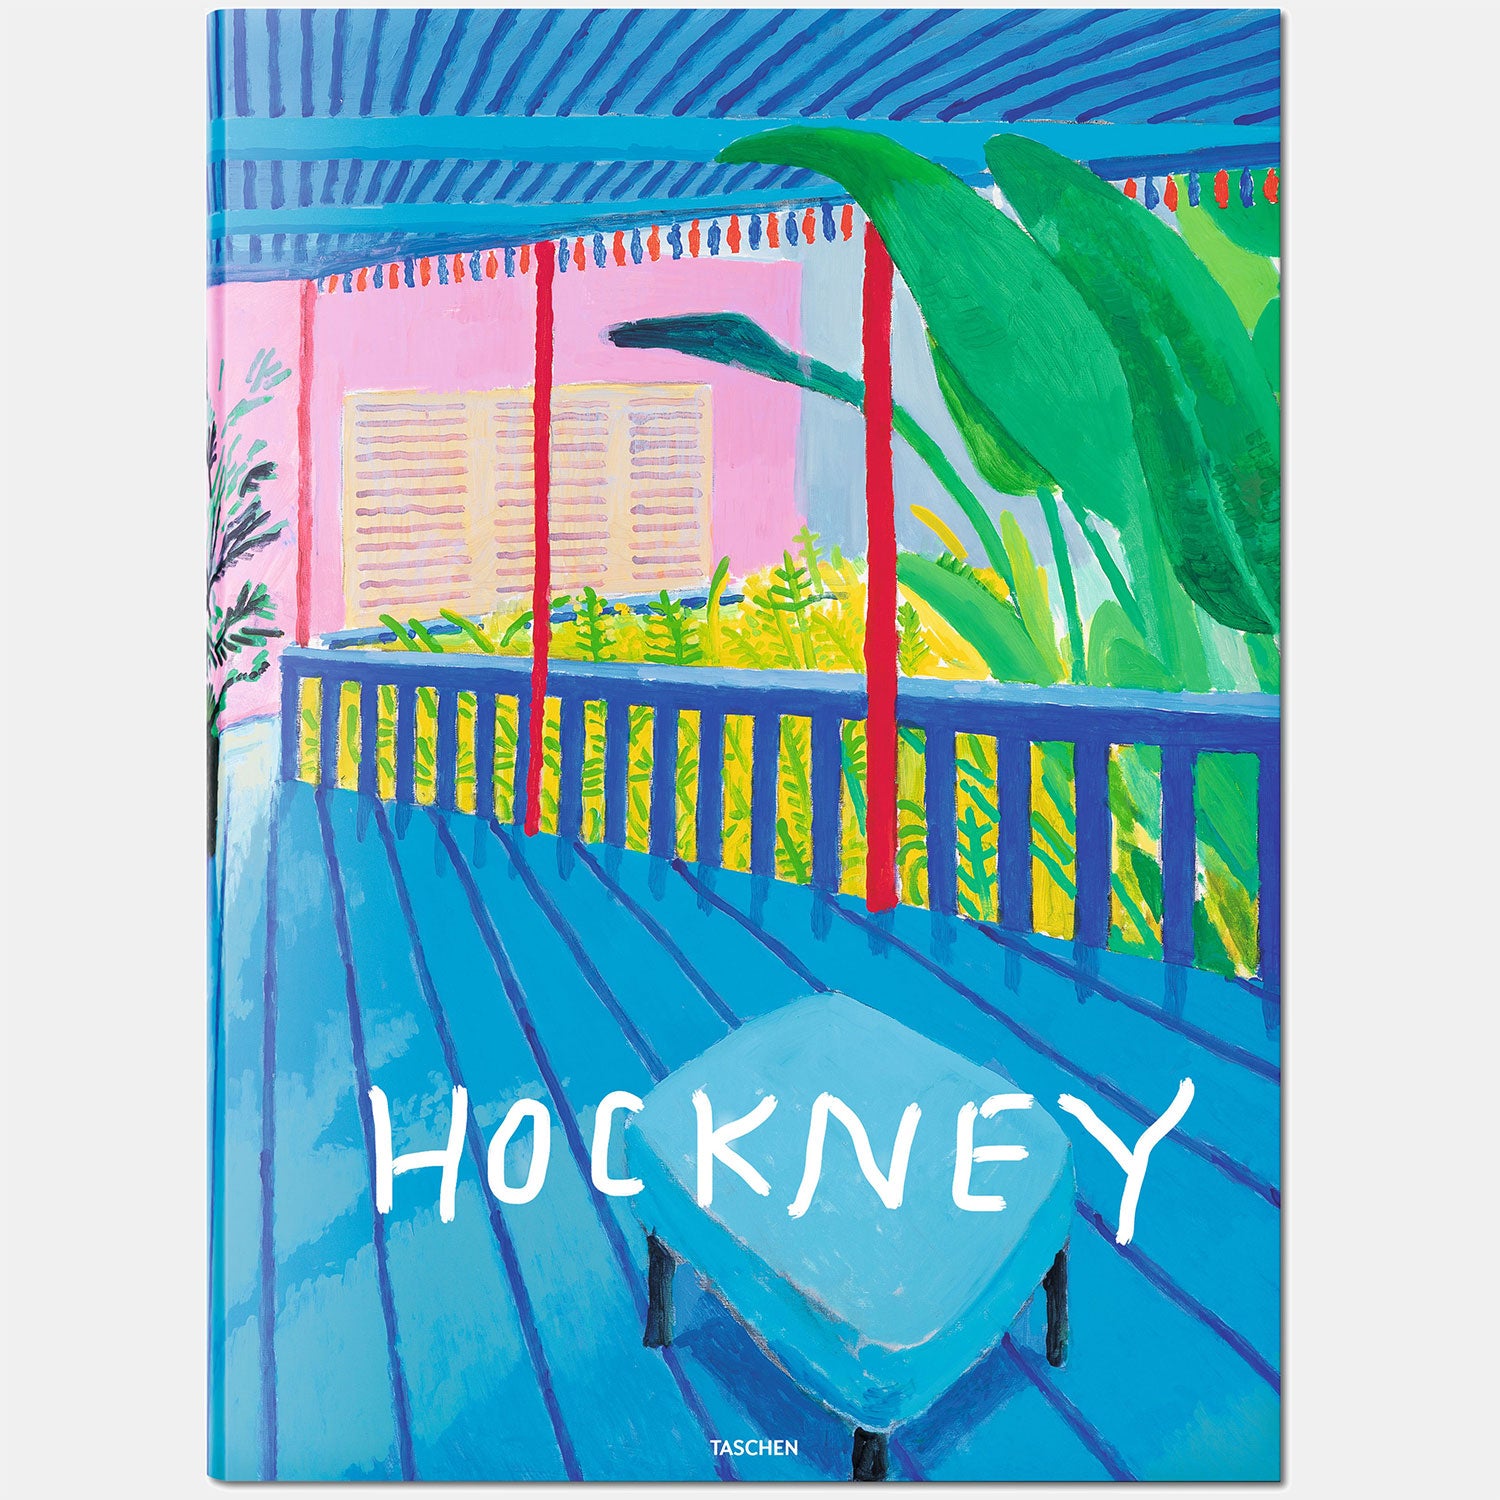 David Hockney. A Bigger Book. SUMO